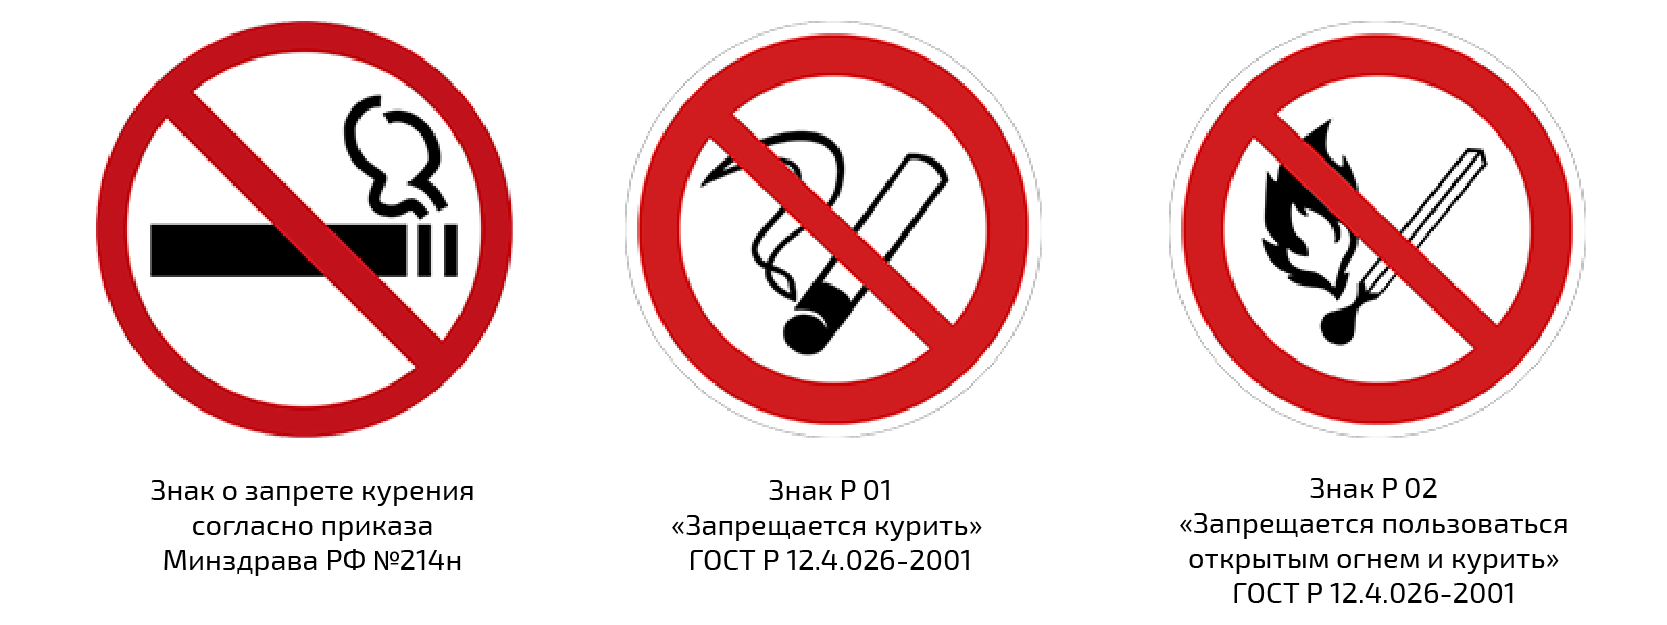 Www запрет ru. Знак о запрете курения по ГОСТУ. Размеры знака курение запрещено по ГОСТУ. Табличка запрет курения ГОСТ. Размер знака о запрете курения по ГОСТУ.